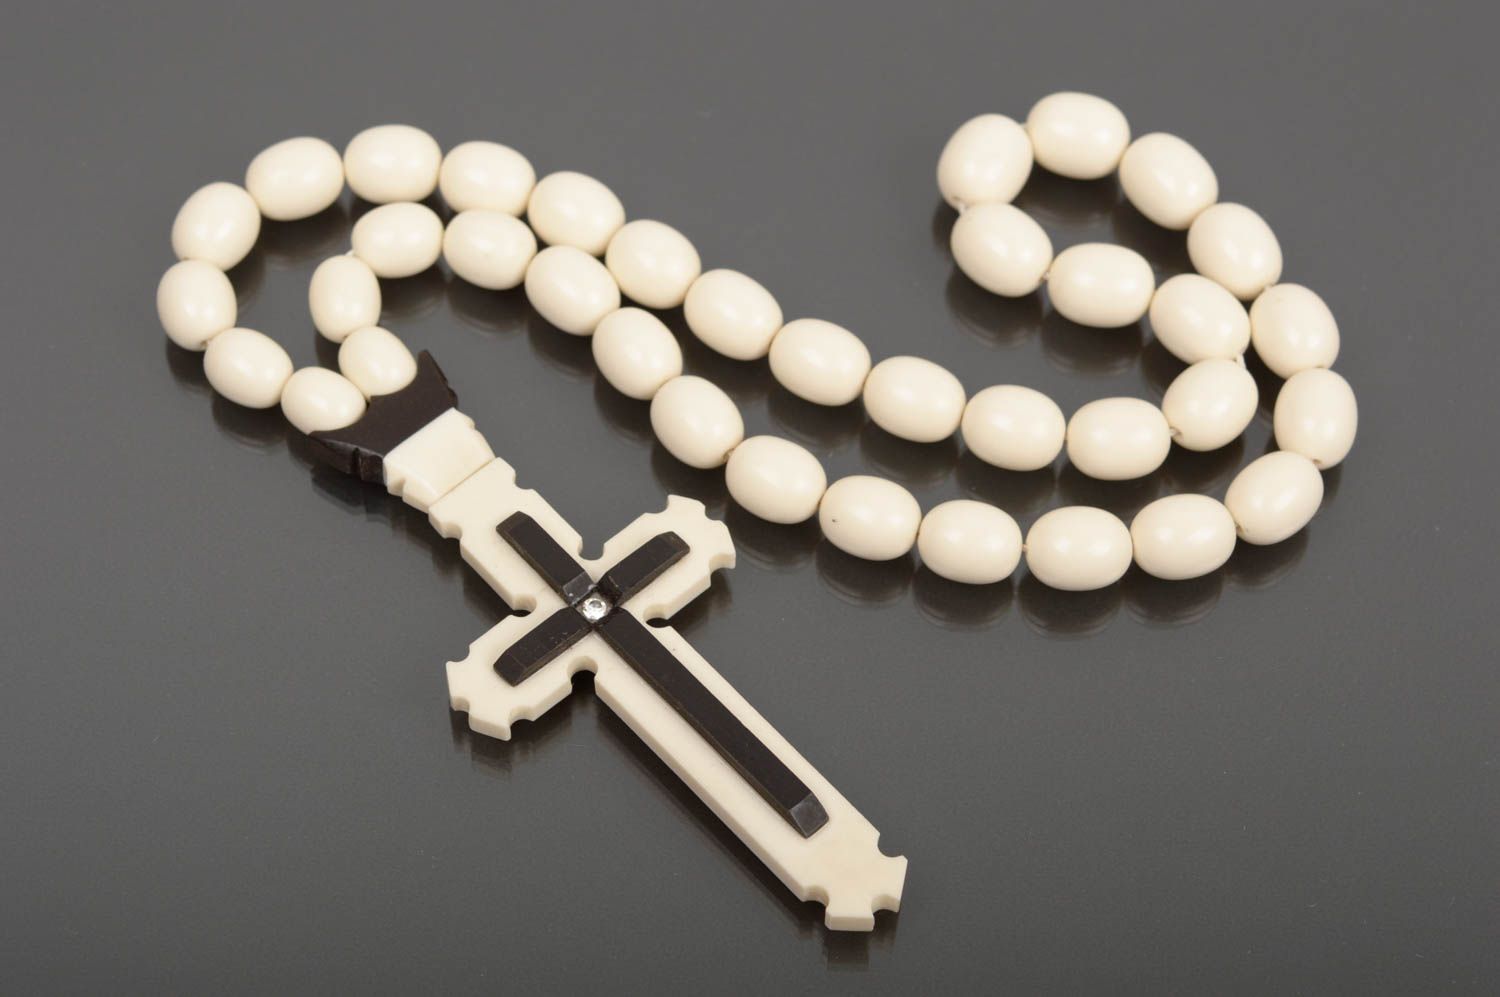 Четки ручной работы четки для молитвы аксессуар для мужчин розарий с крестом фото 1